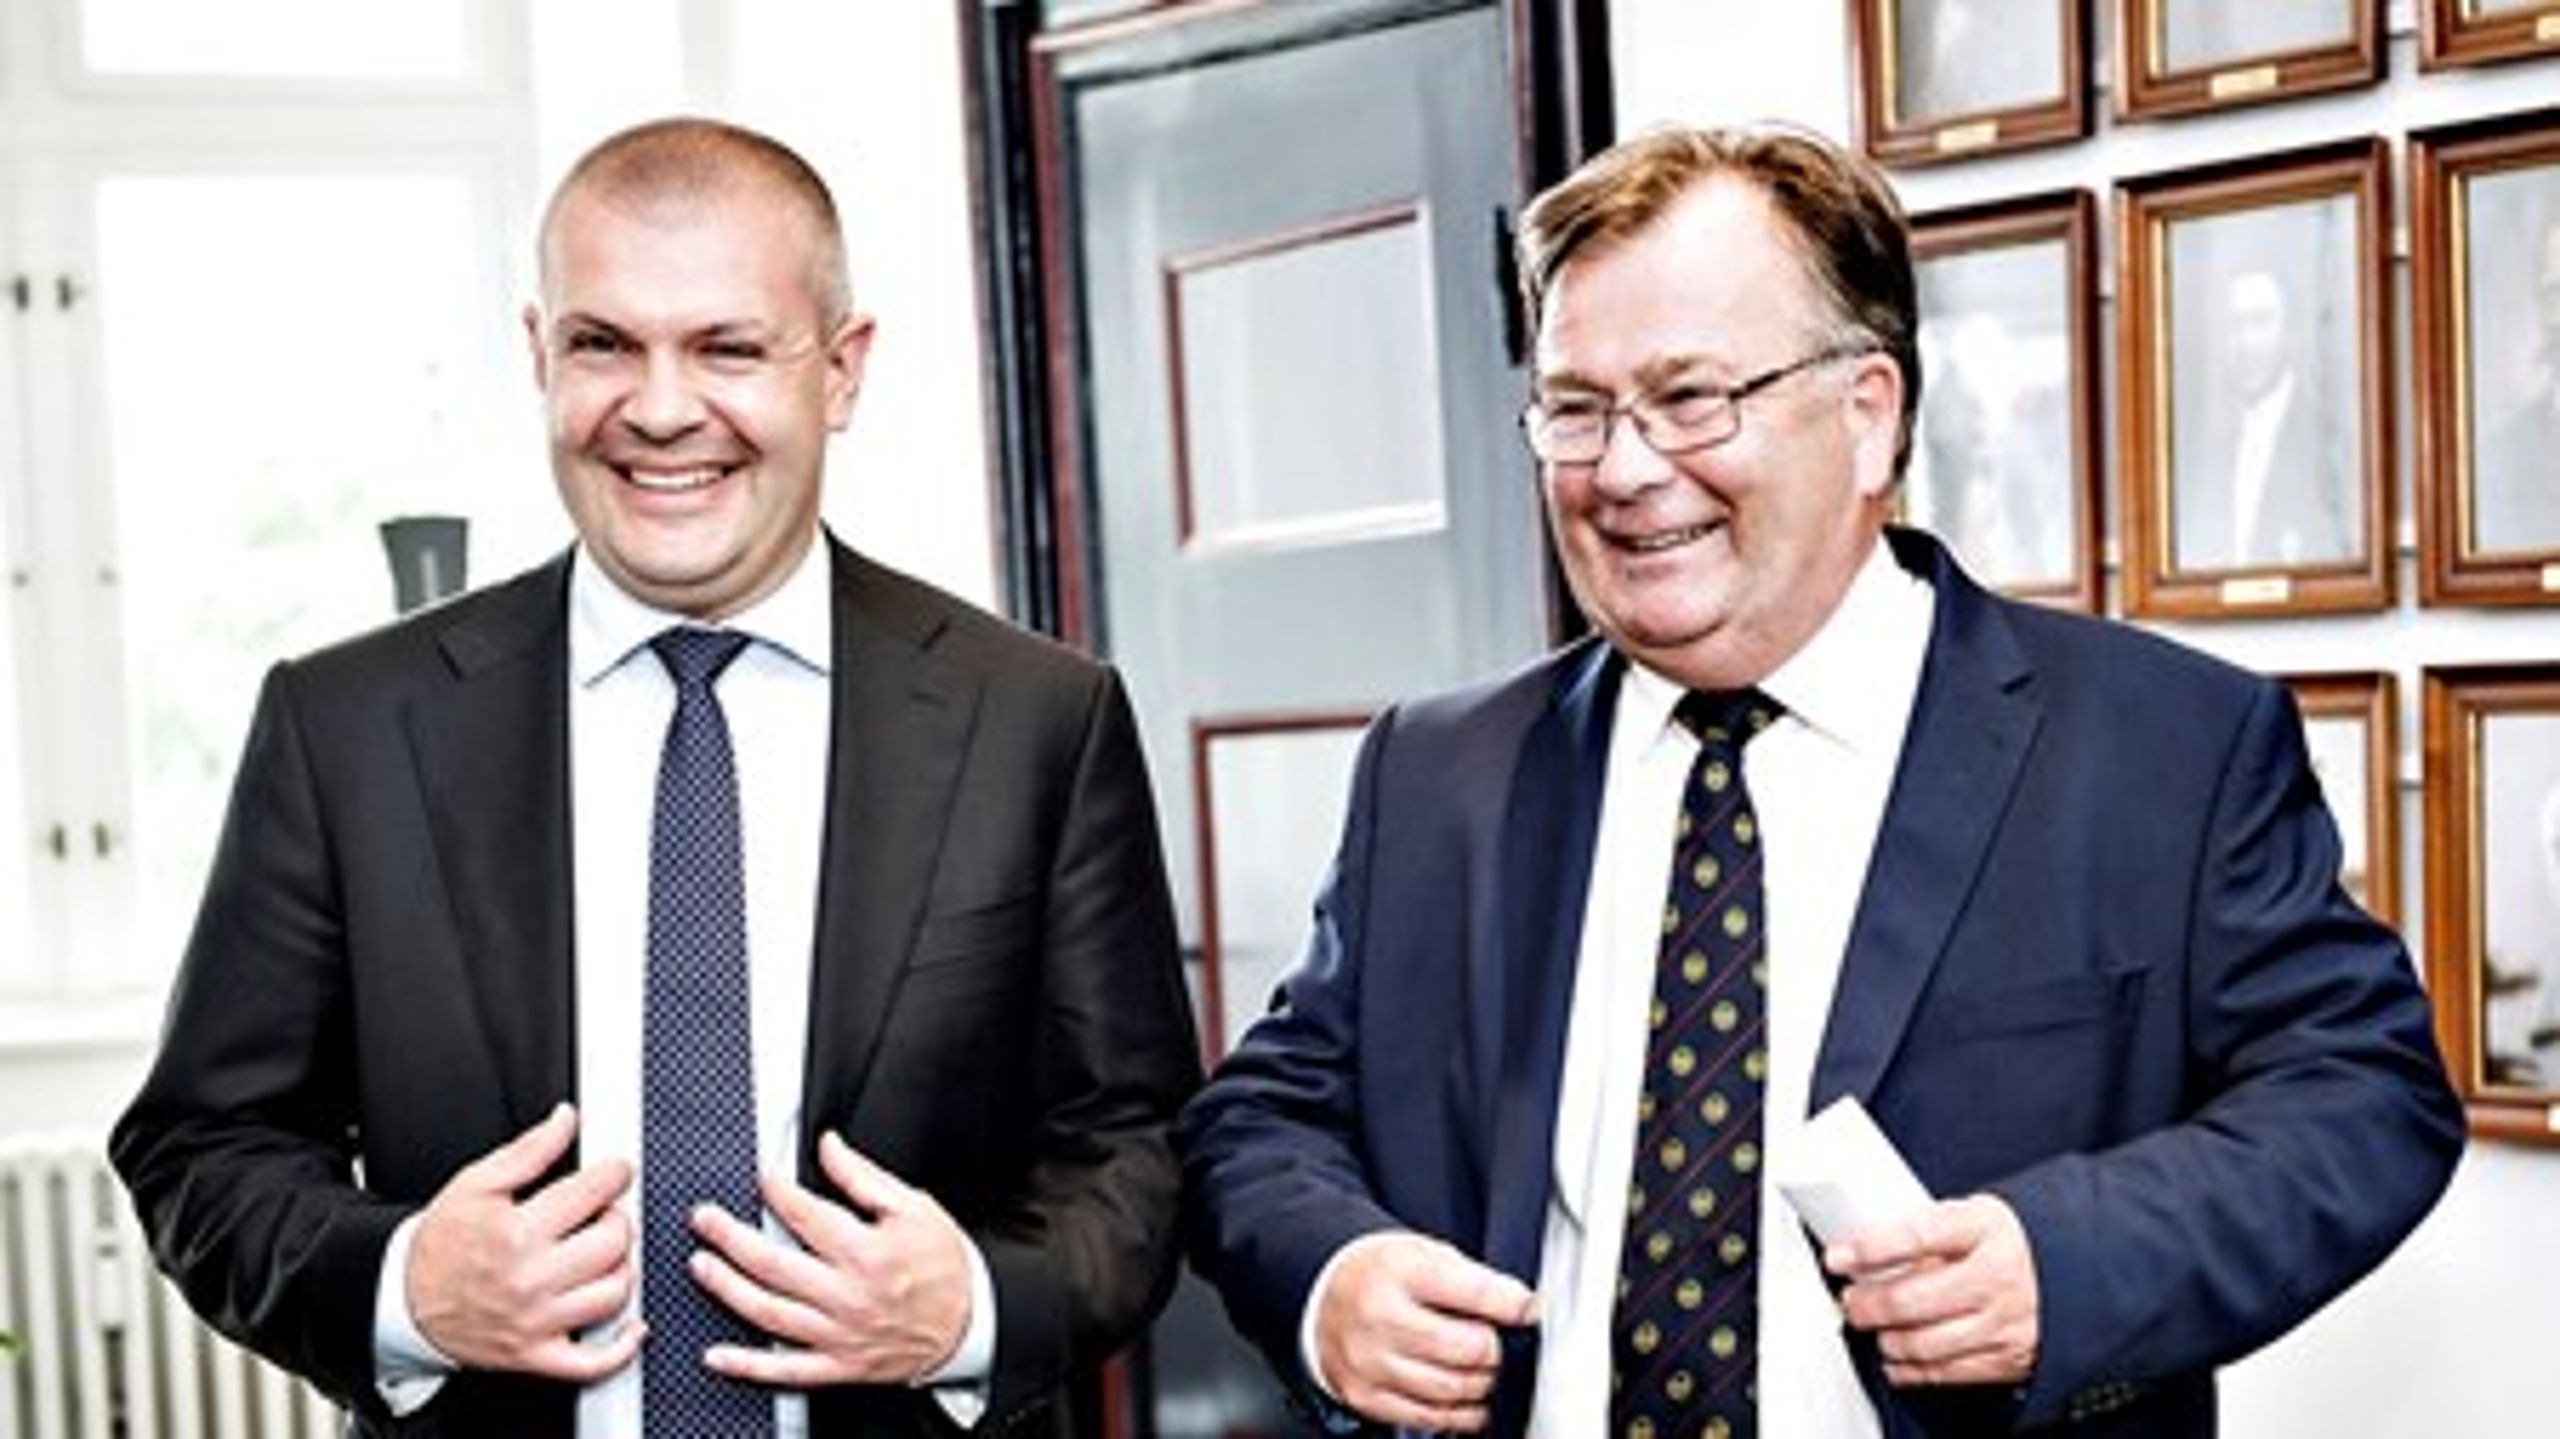 Bjarne Corydon og Claus Hjort Frederiksen holdt mandag deres anden fælles ministeroverdragelse i Finansministeriet. Denne gang var det Corydon, der overleverede ministeriet til Hjort Frederiksen.